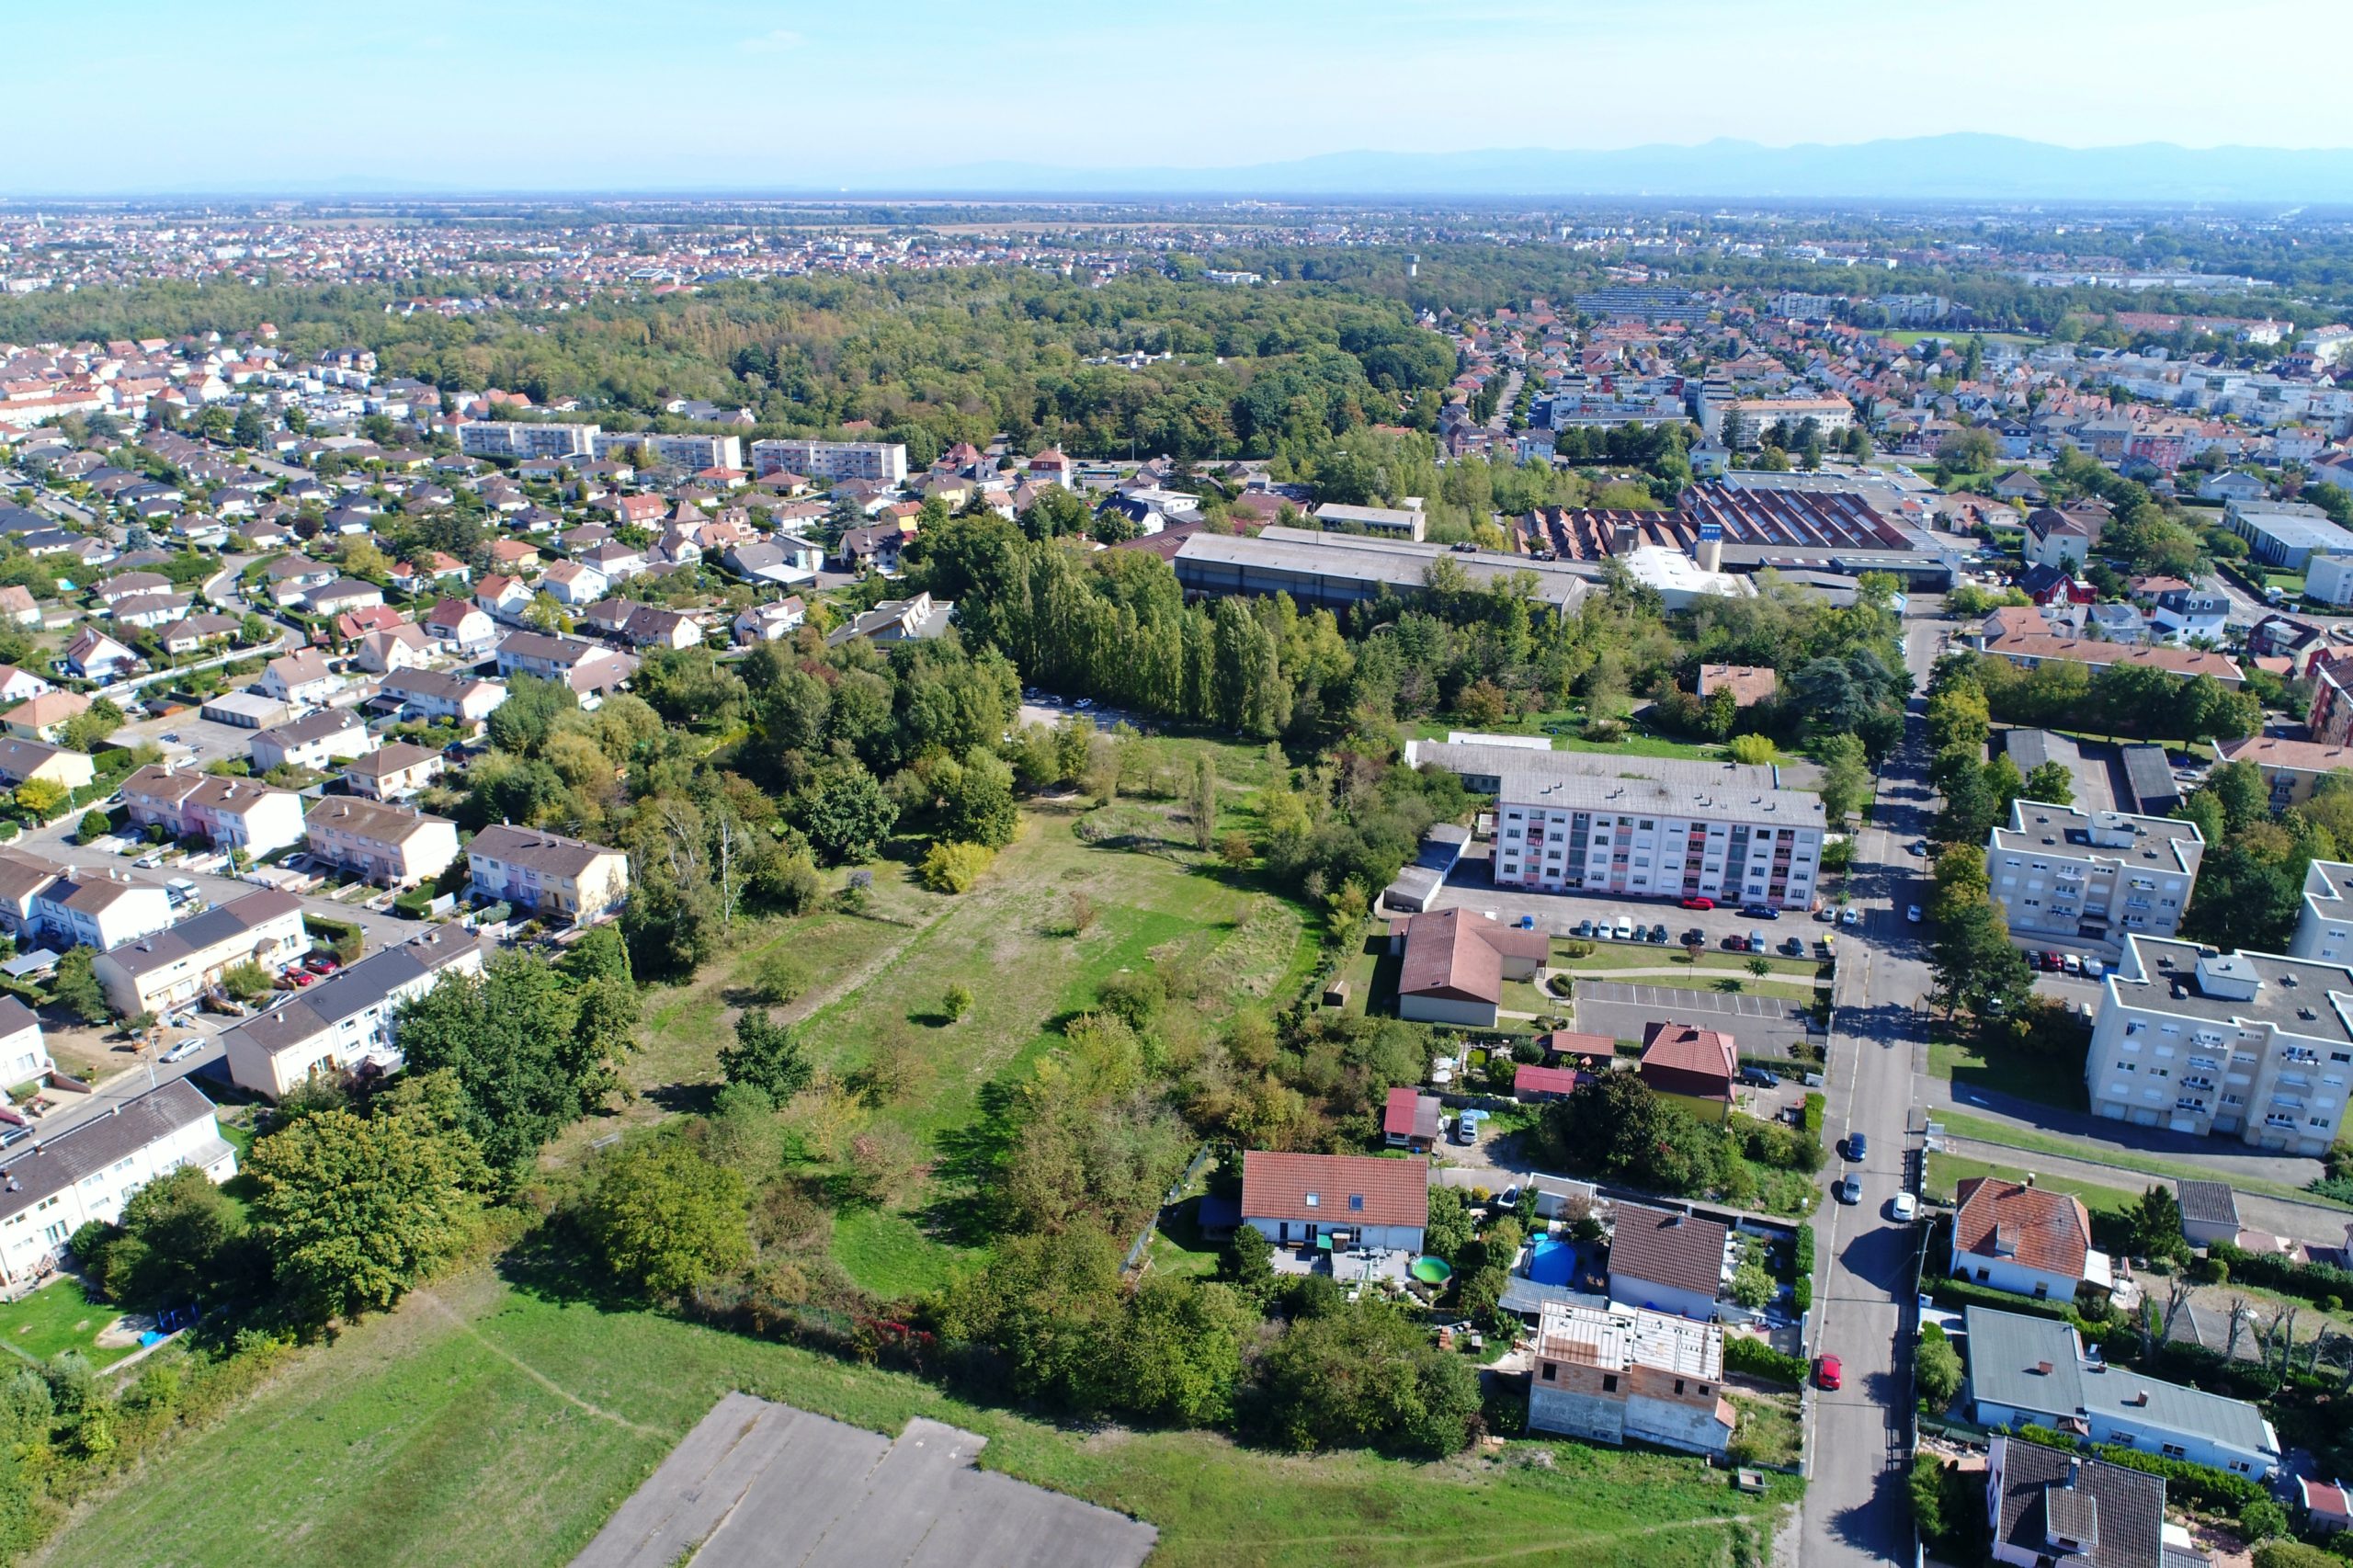 Lotissement de terrains viabilisés "Terre Ad Vitam" à Kingersheim dans le Haut-Rhin